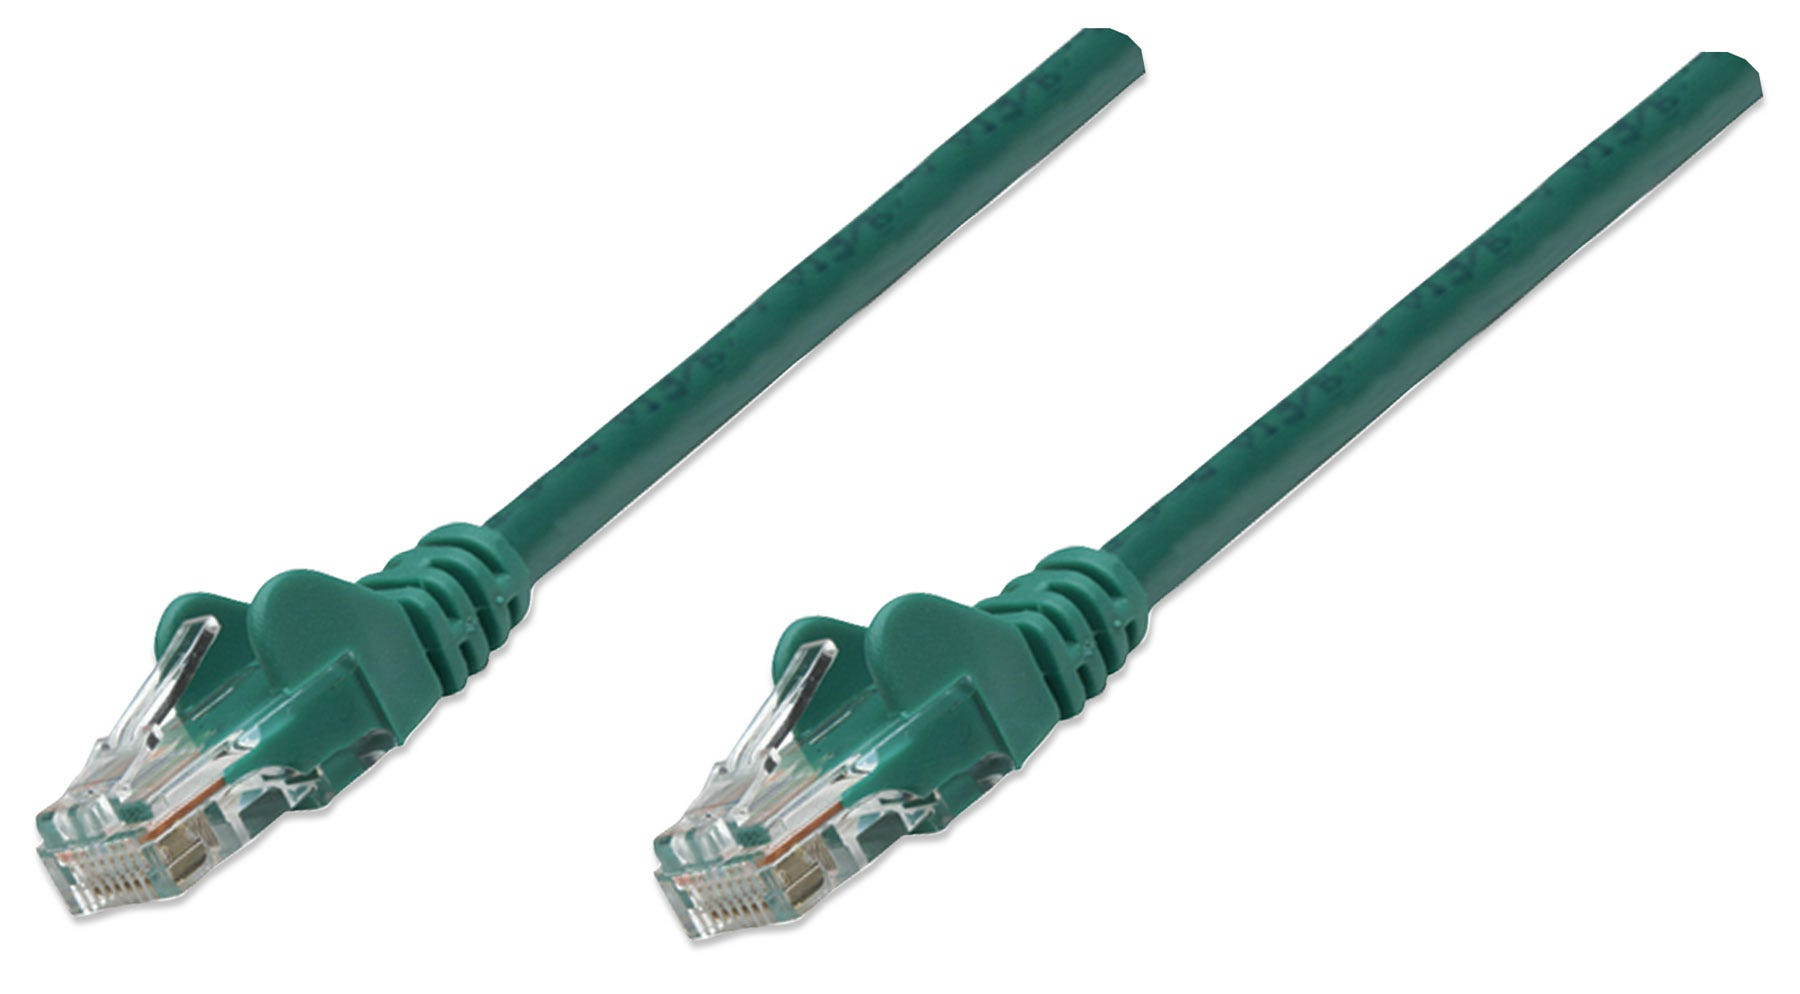 Cable De Red Cat6 Utp Intellinet Rj45 Macho-Macho 3Mts Verde 342506